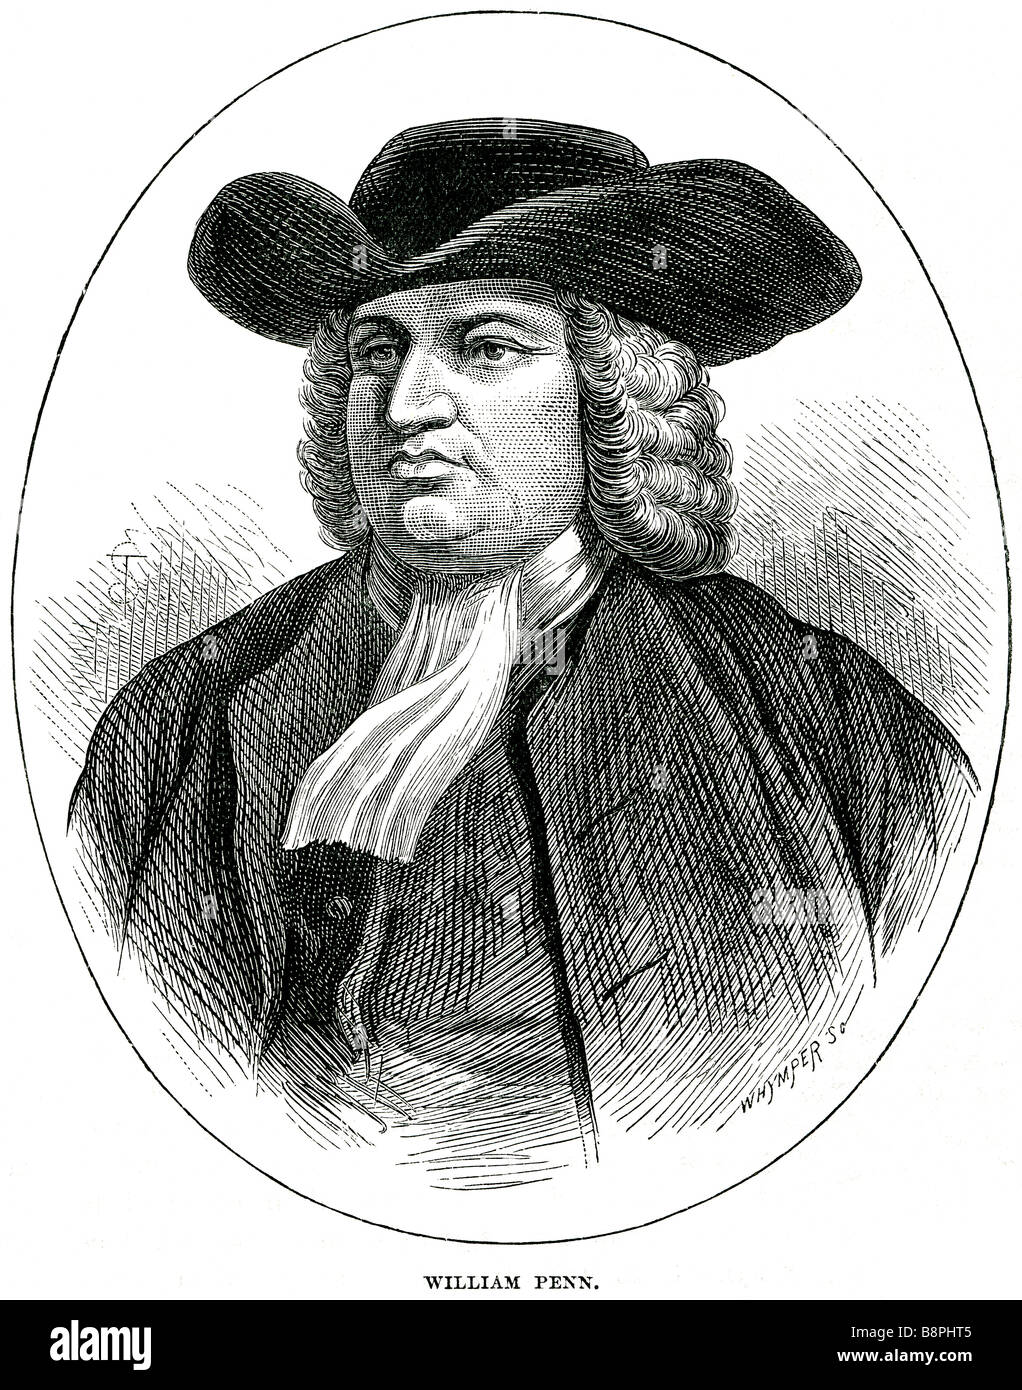 William Penn (Octobre 14, 1644 - Juillet 30, 1718) a été le fondateur et propriétaire de "absolue" de la province de Pennsylvanie, l'Engli Banque D'Images